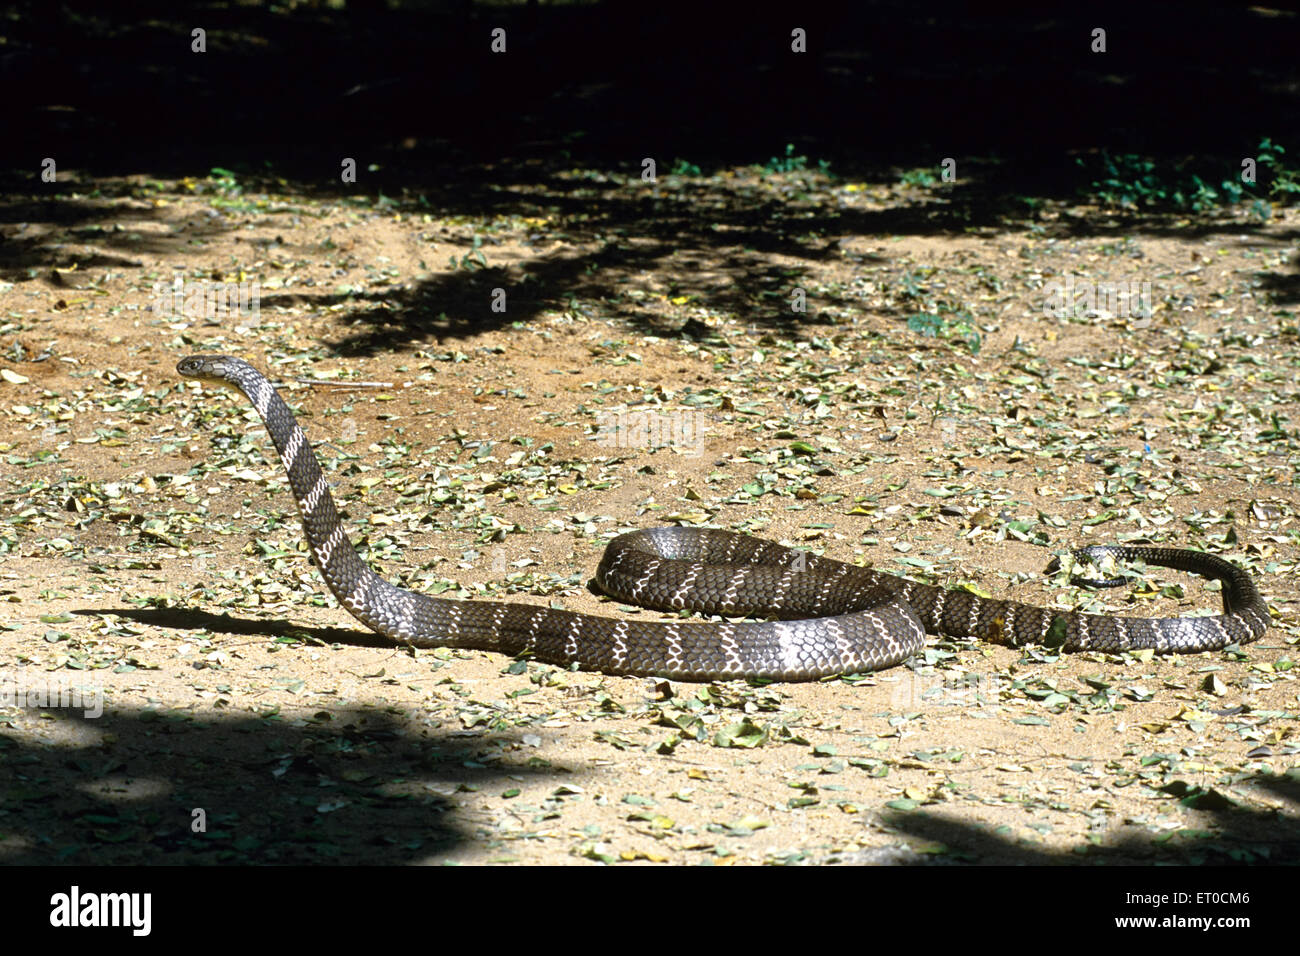 re cobra serpente ofiofago hannah Foto Stock